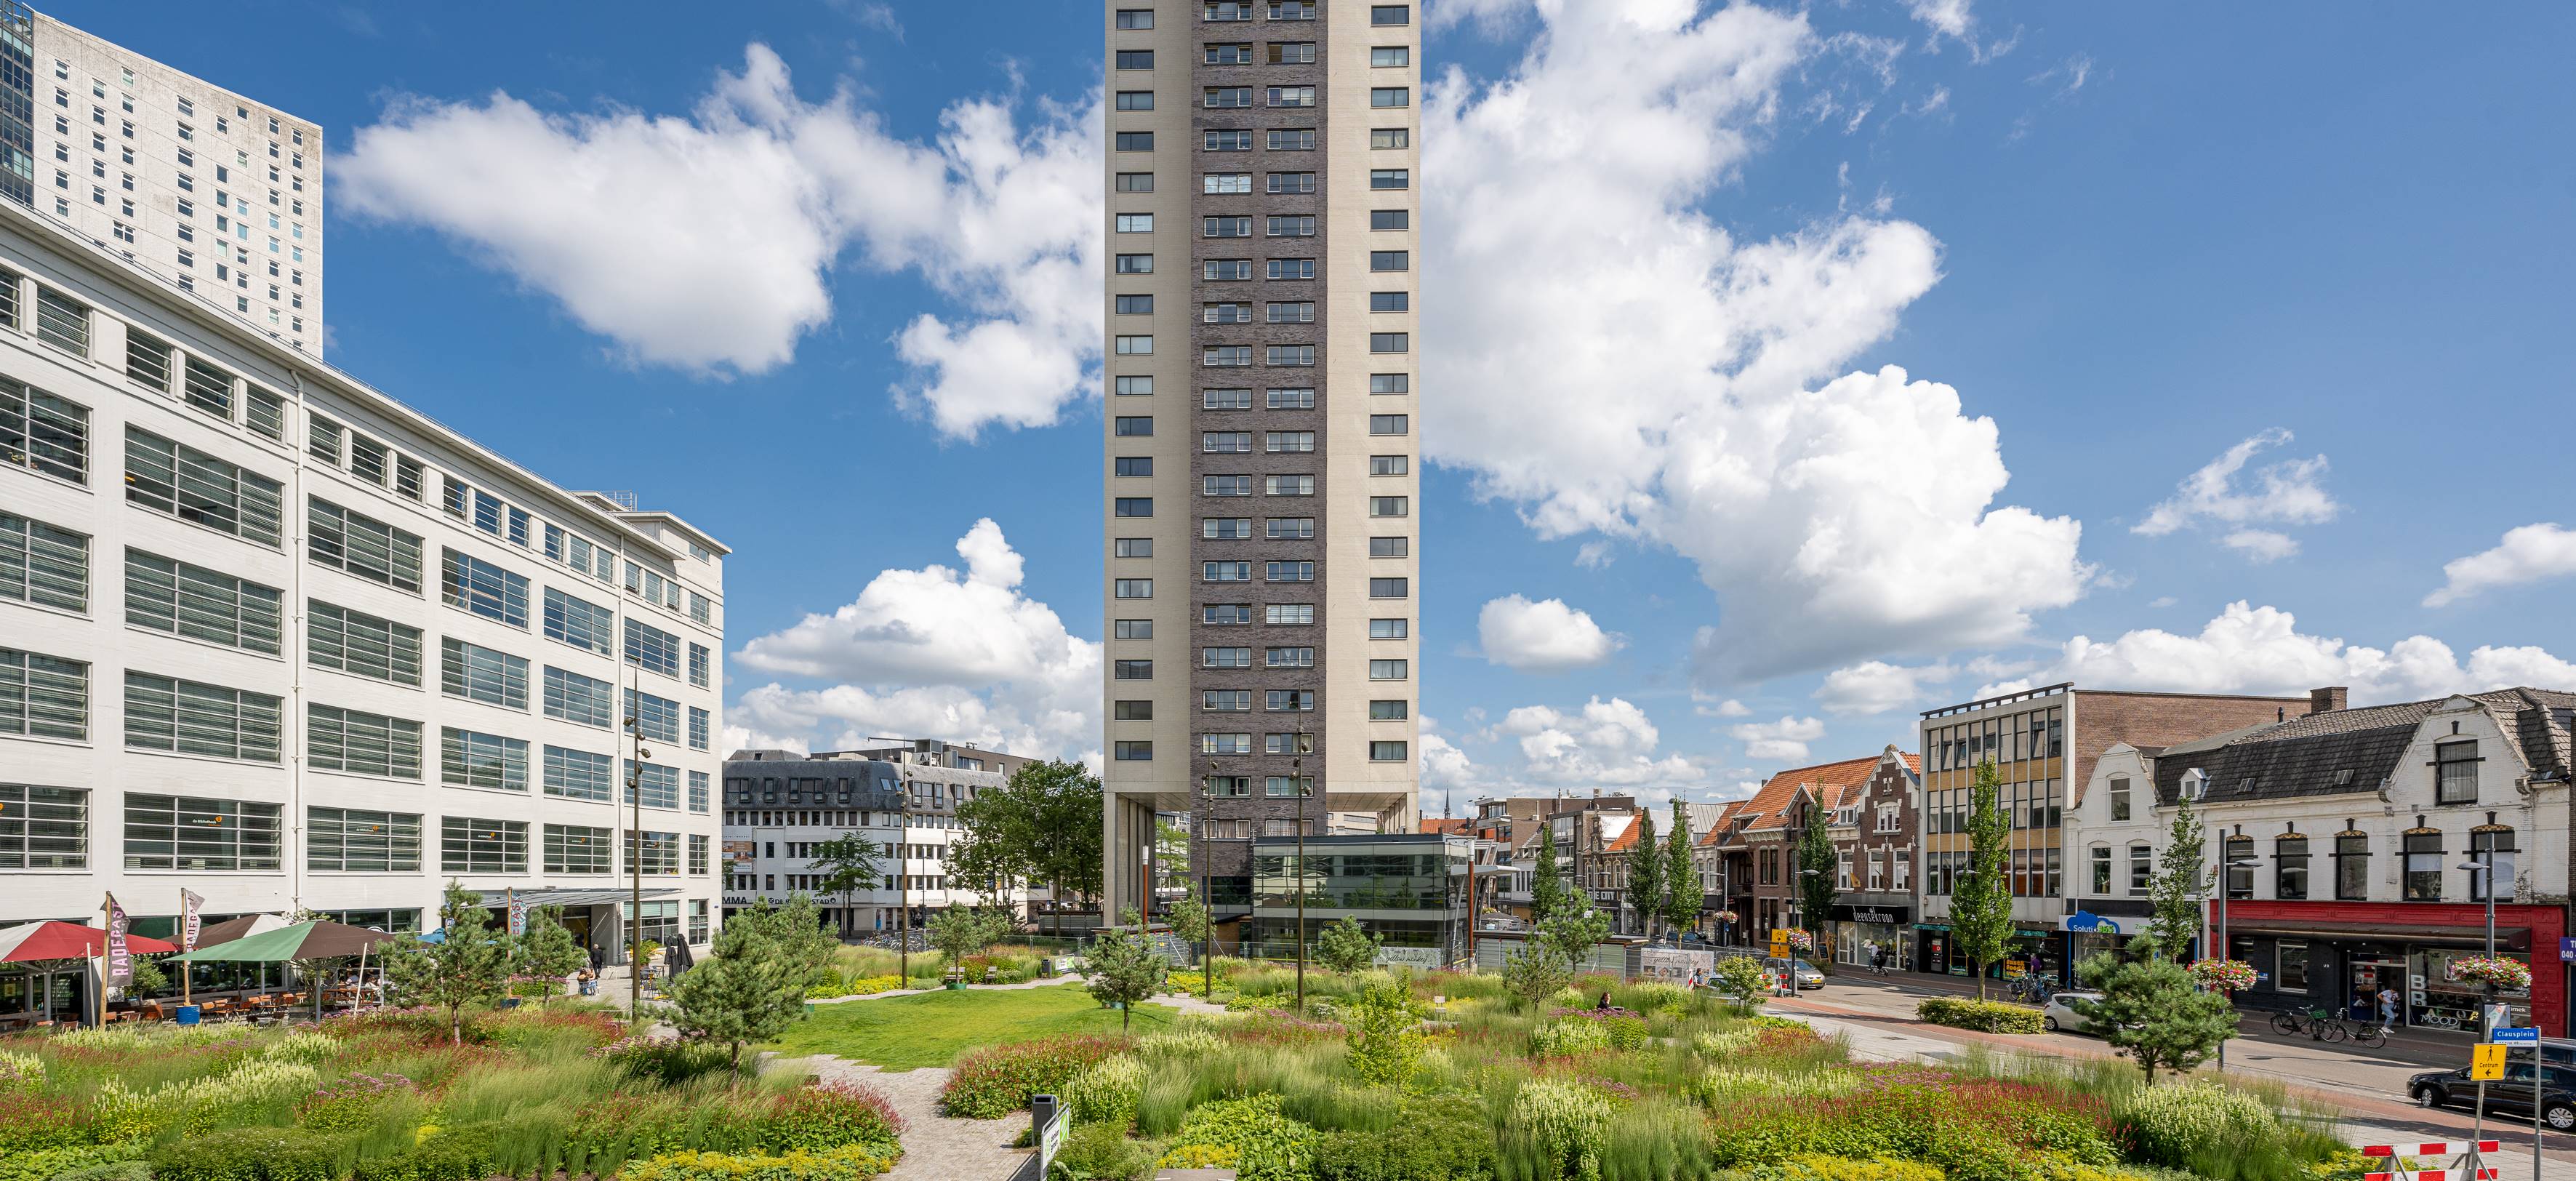 Clausplein, Eindhoven - Stadspark met waterretentiesysteem op parkeergarage